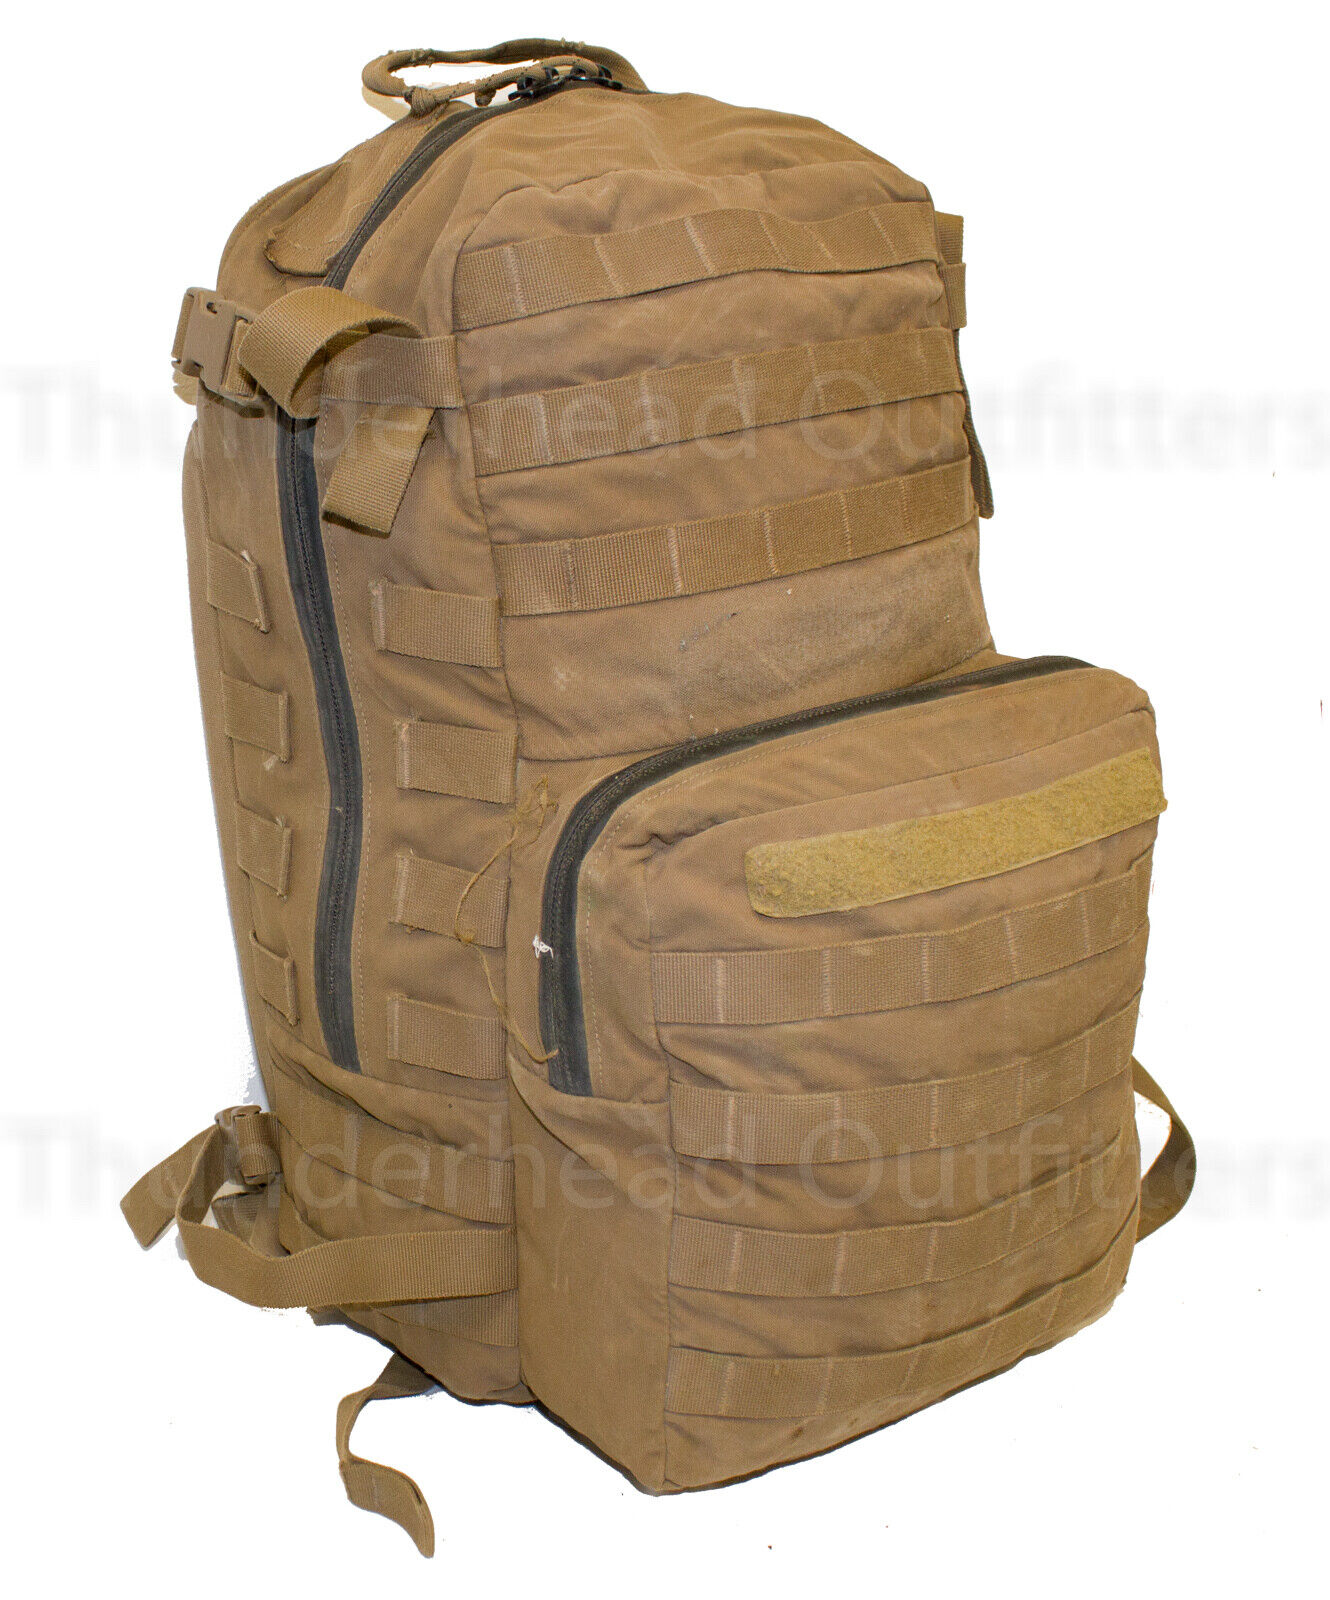 USMC FILBE ASSAULT PACK Coyote USGI 3 Day Backpack Bug Out Bag ...